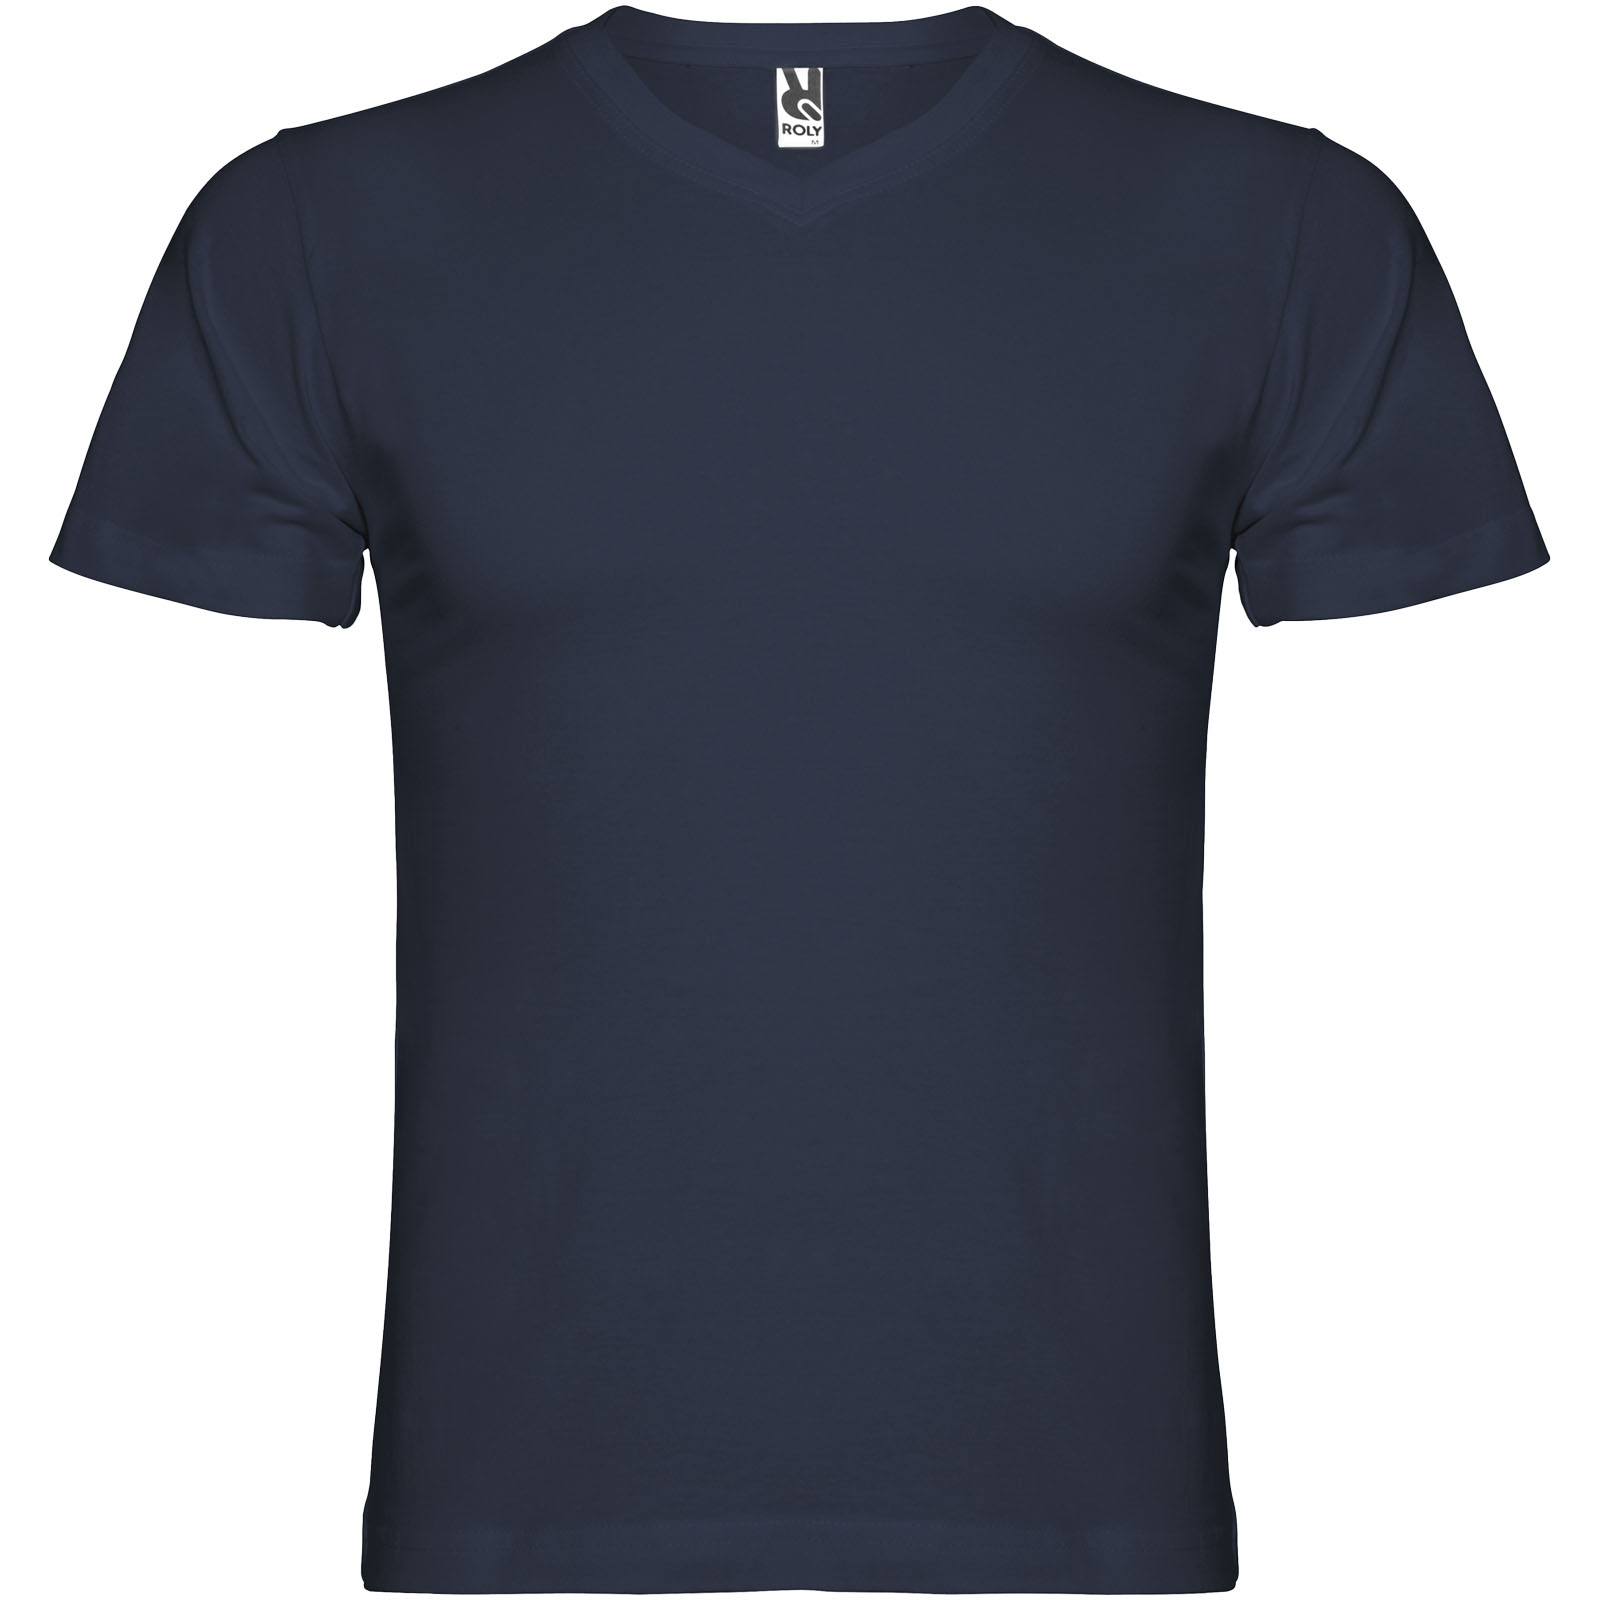 Advertising T-shirts - Samoyedo short sleeve men's v-neck t-shirt - 0